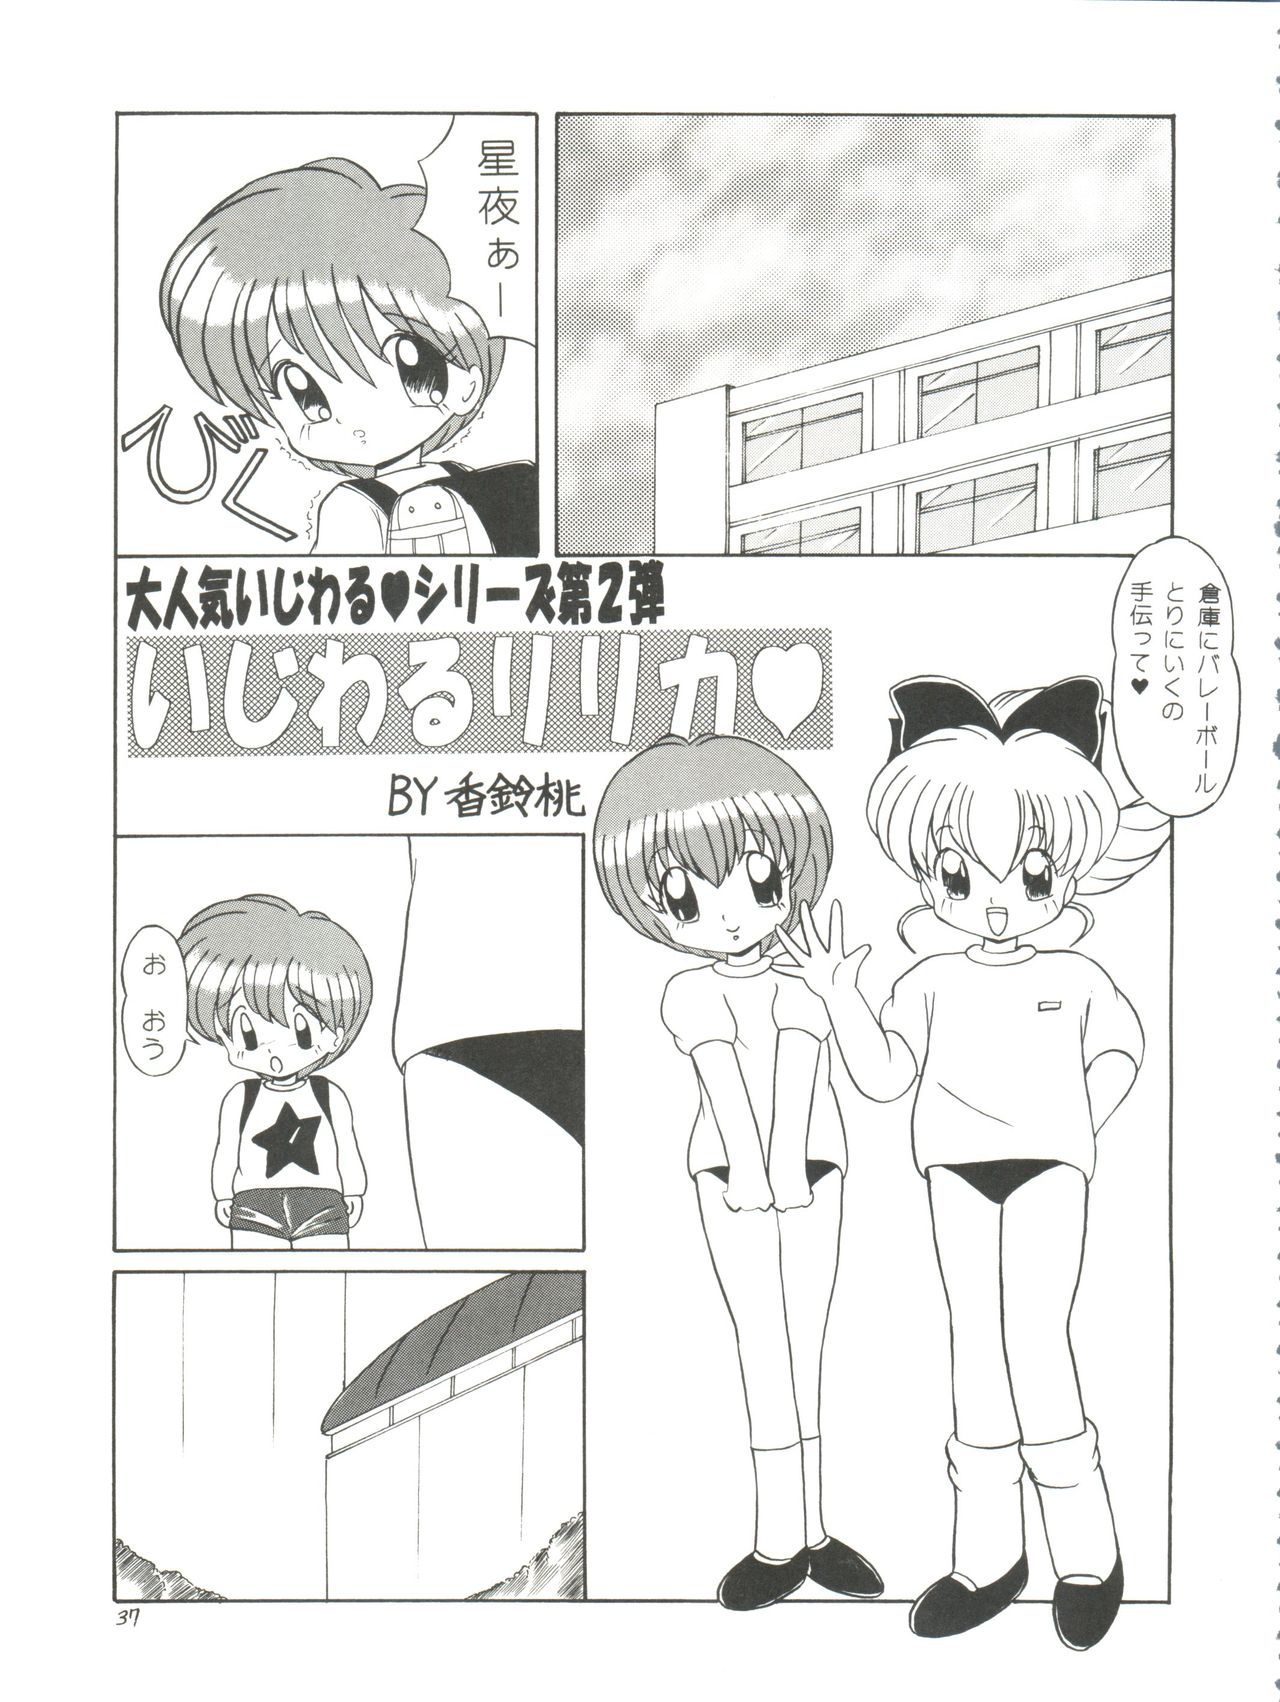 [Momo no Tsubomi (Various)] Lolikko LOVE 4 (Various) page 37 full